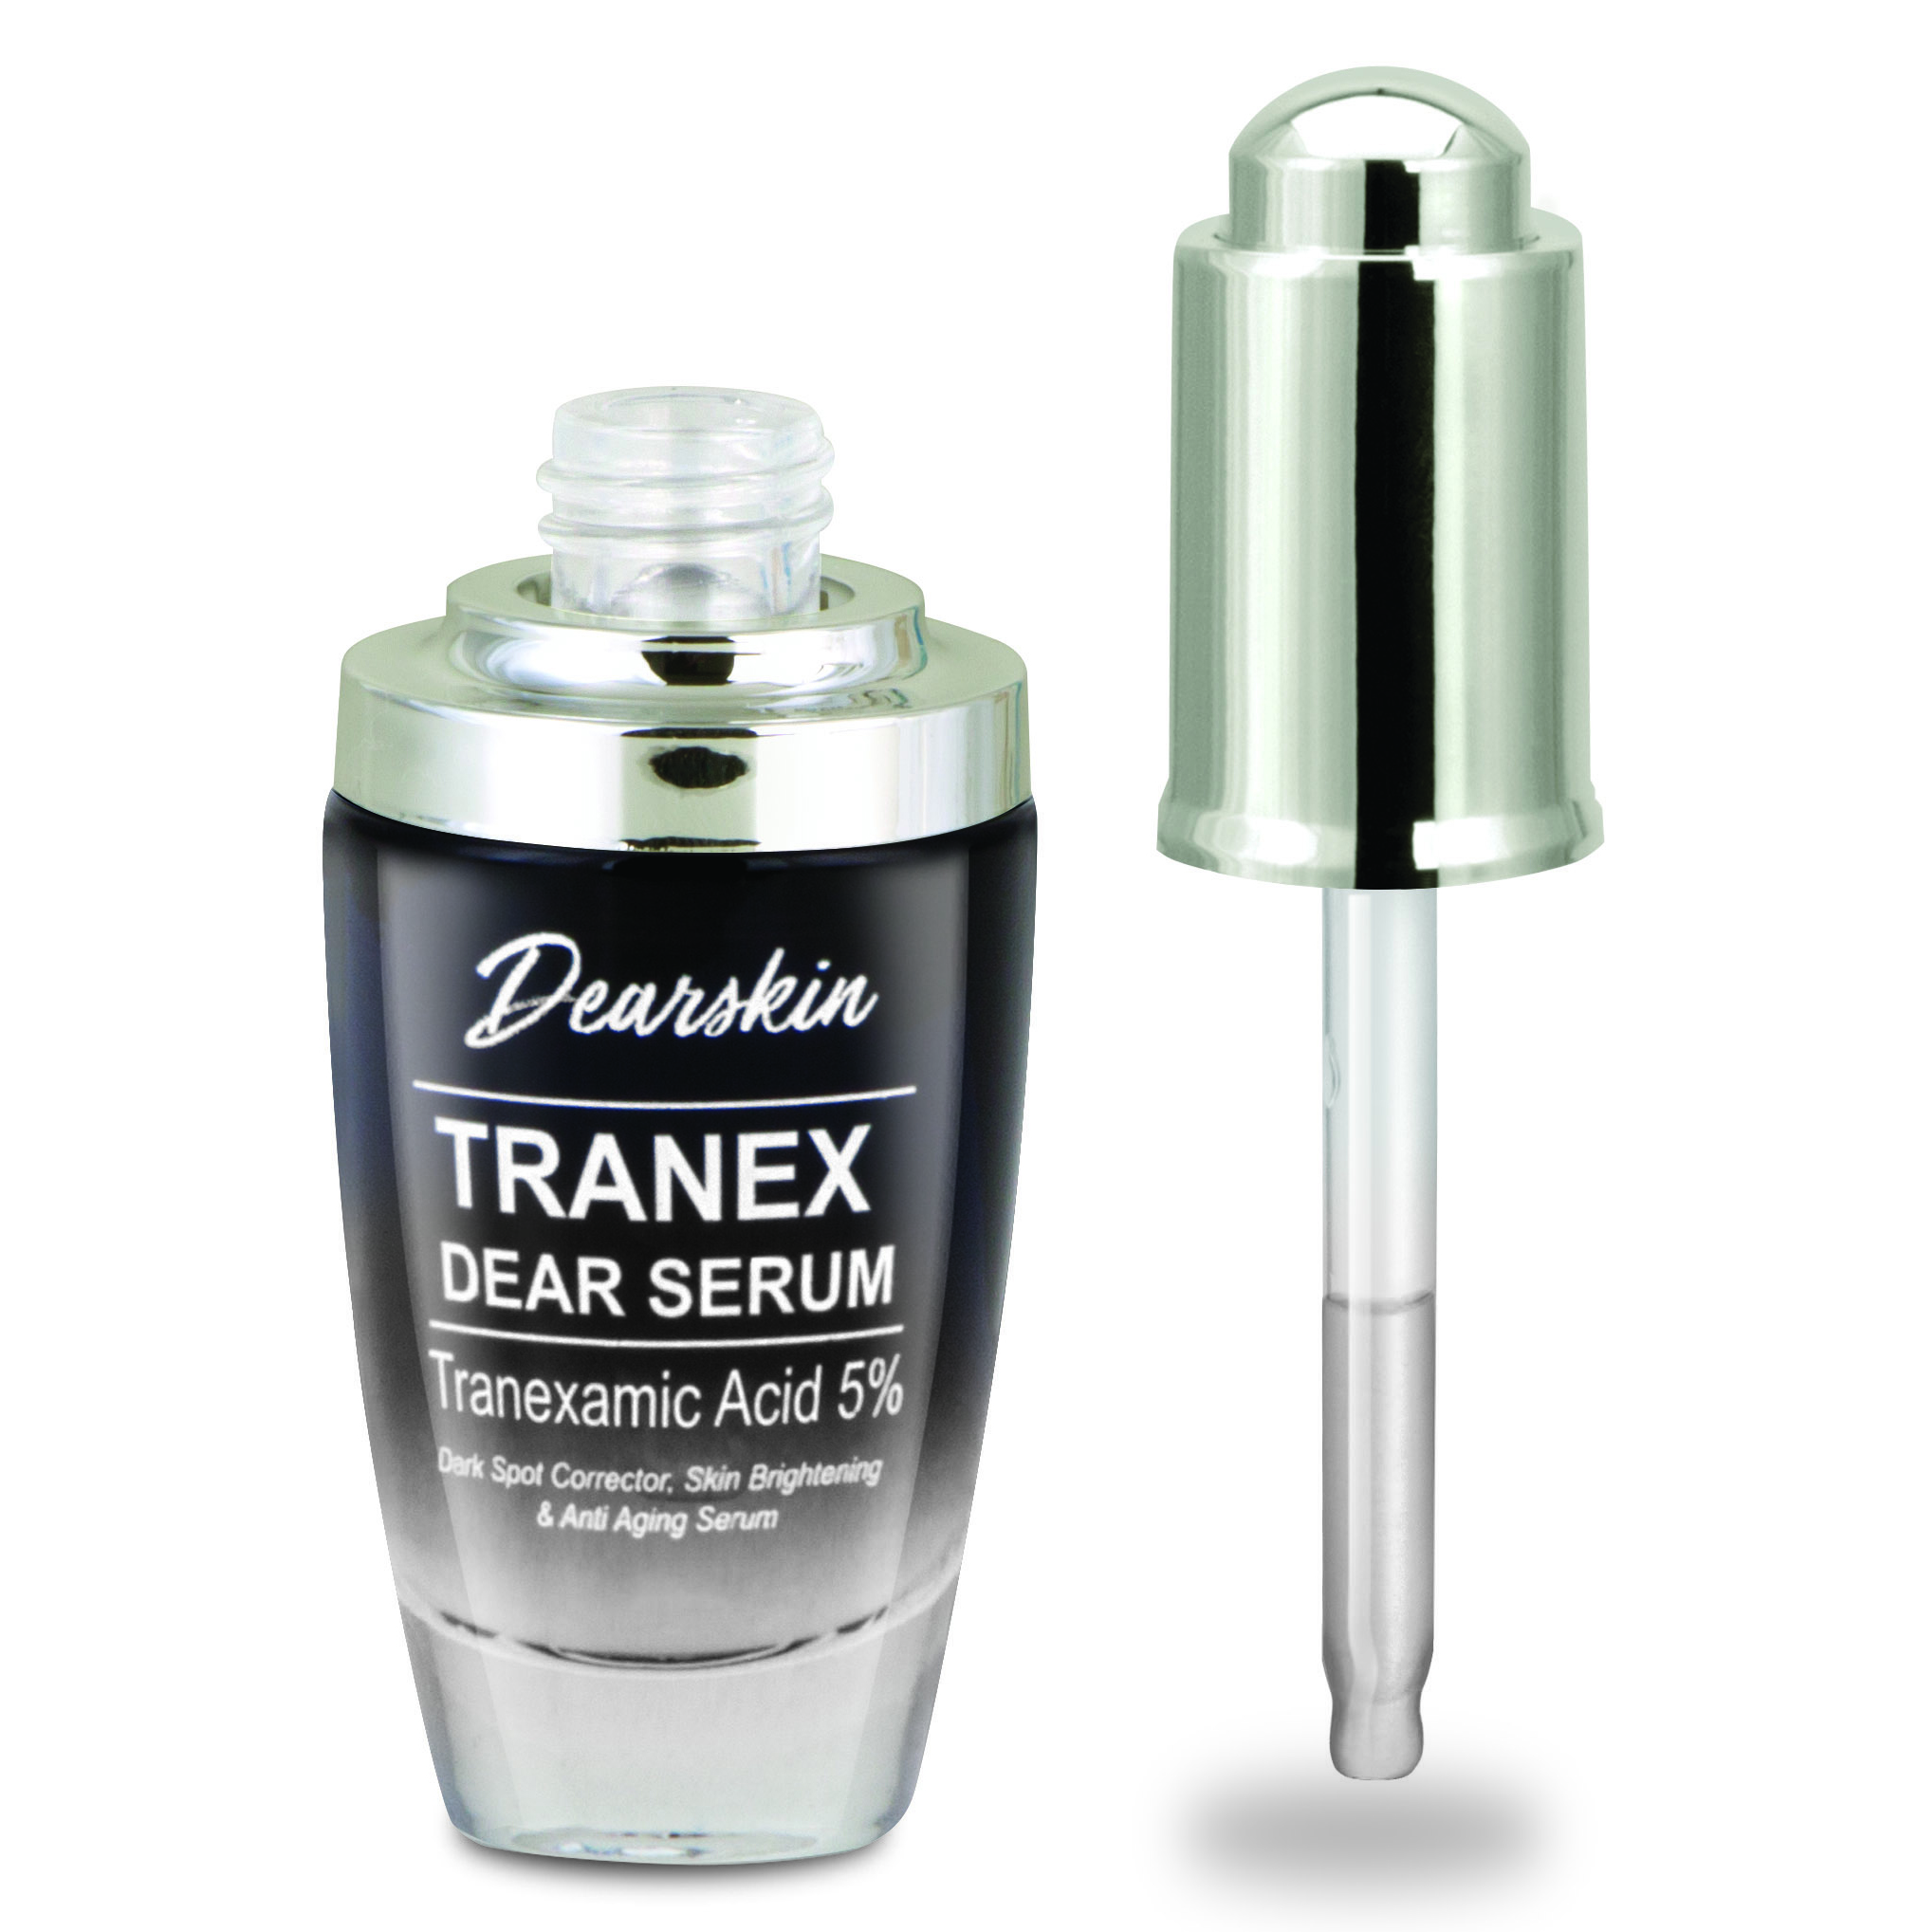 Tranex Dear Serum - Ácido Tranexâmico 5%